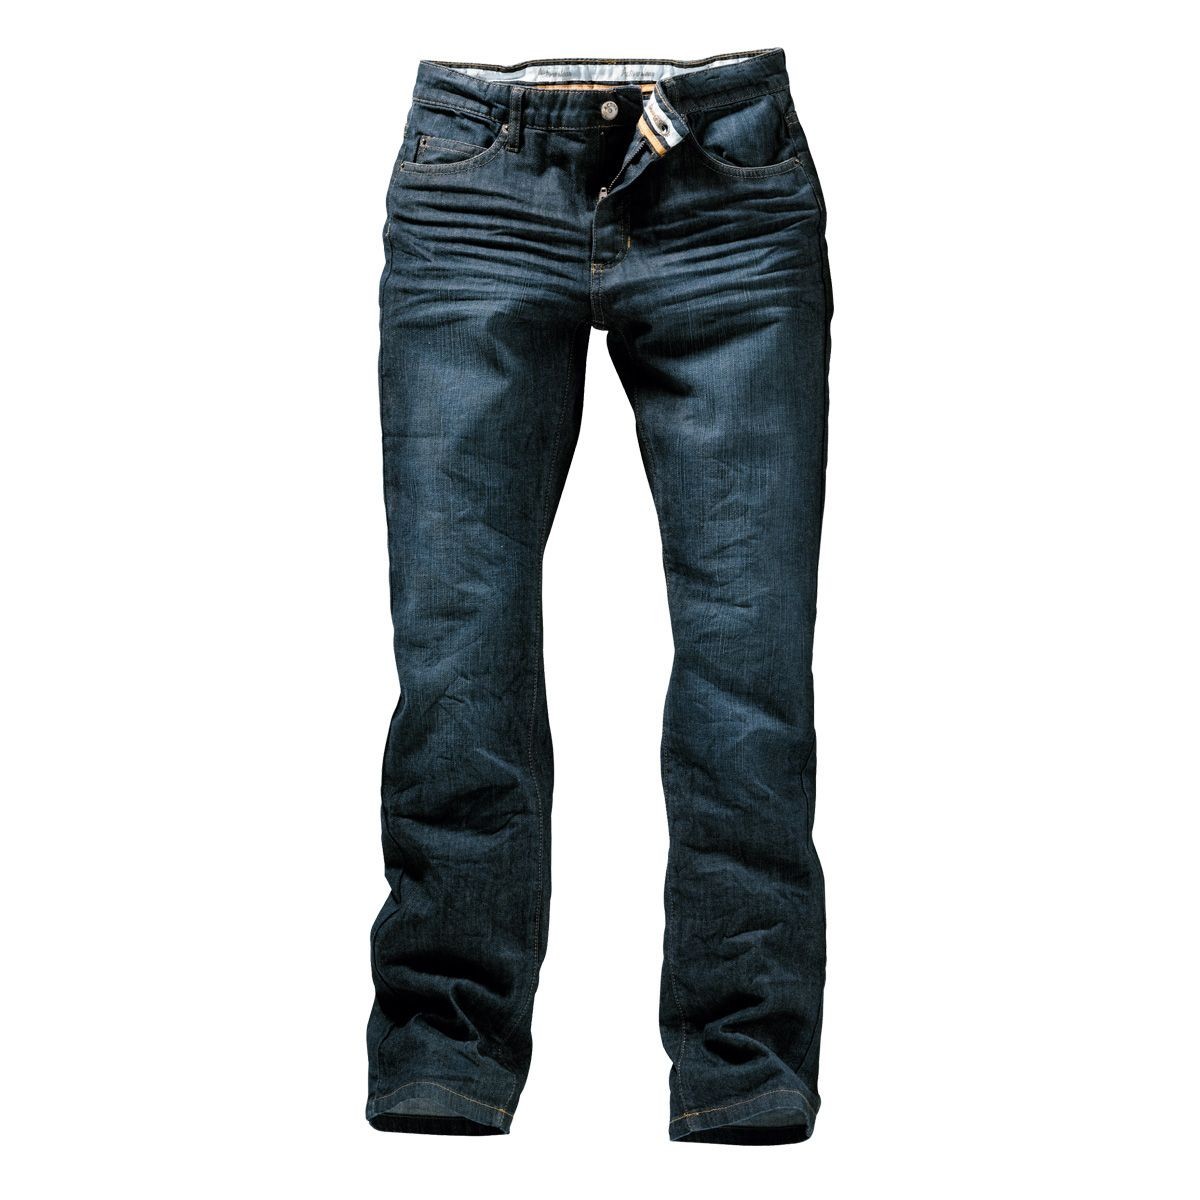 Straight stretch jeans size 8 bit low crotch